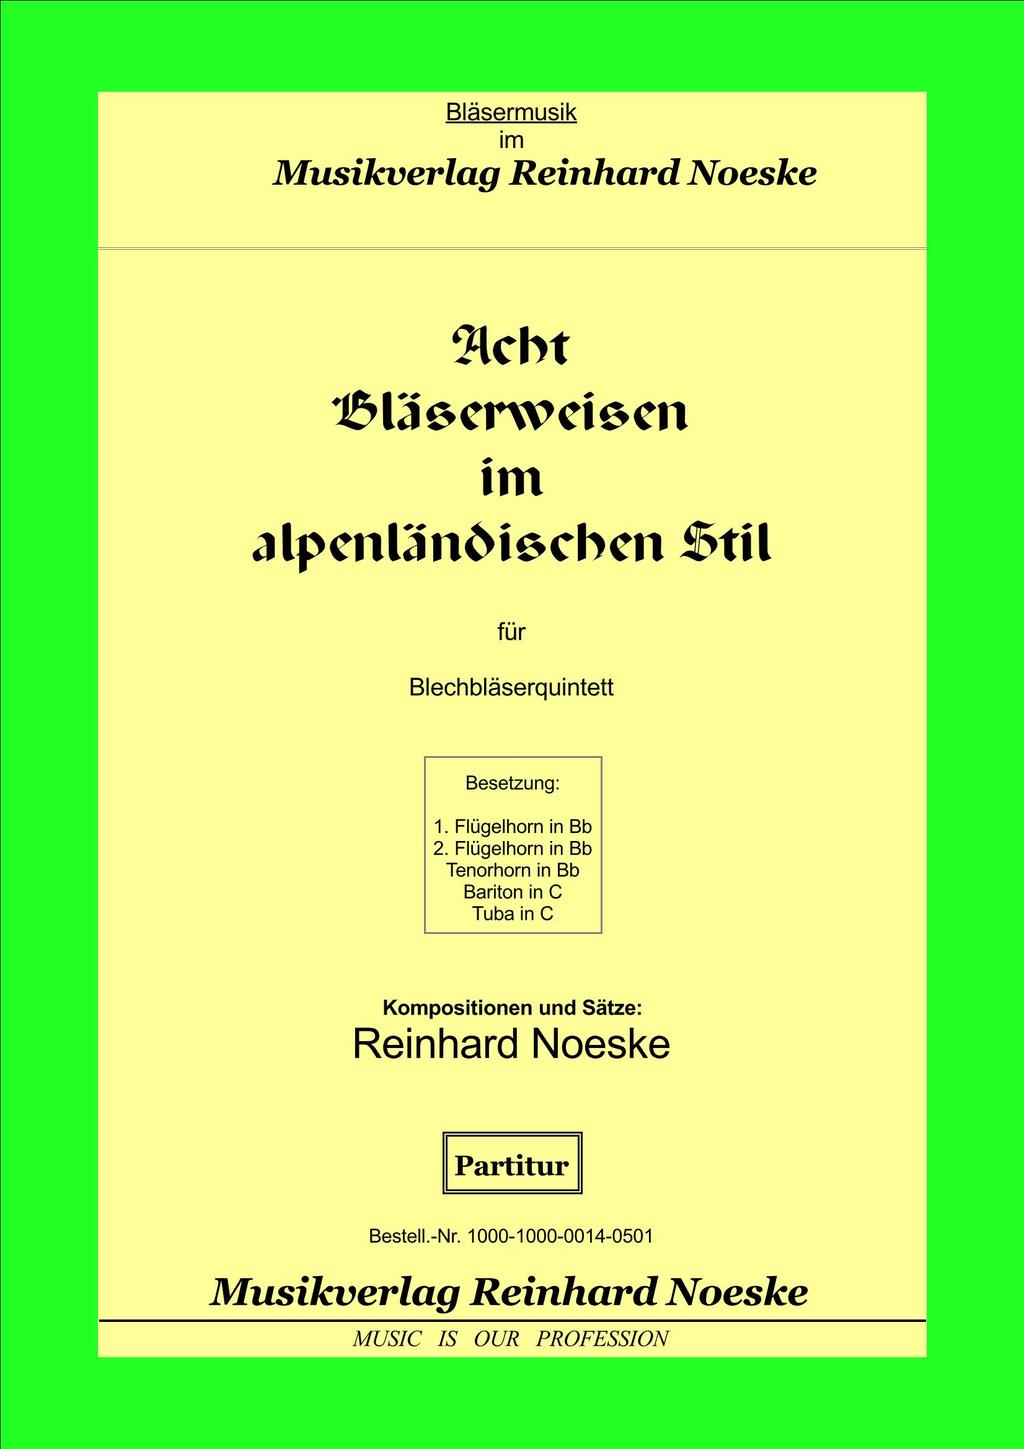 Gesamtkatalog Notenausgaben 2017 Blechbläserquintett Noeske, Reinhard (* 1962): Acht Bläserweisen im alpenländischen Stil für Blechbläserquintett Volksmusik/Weisenbläsermusik Besetzung: 1.